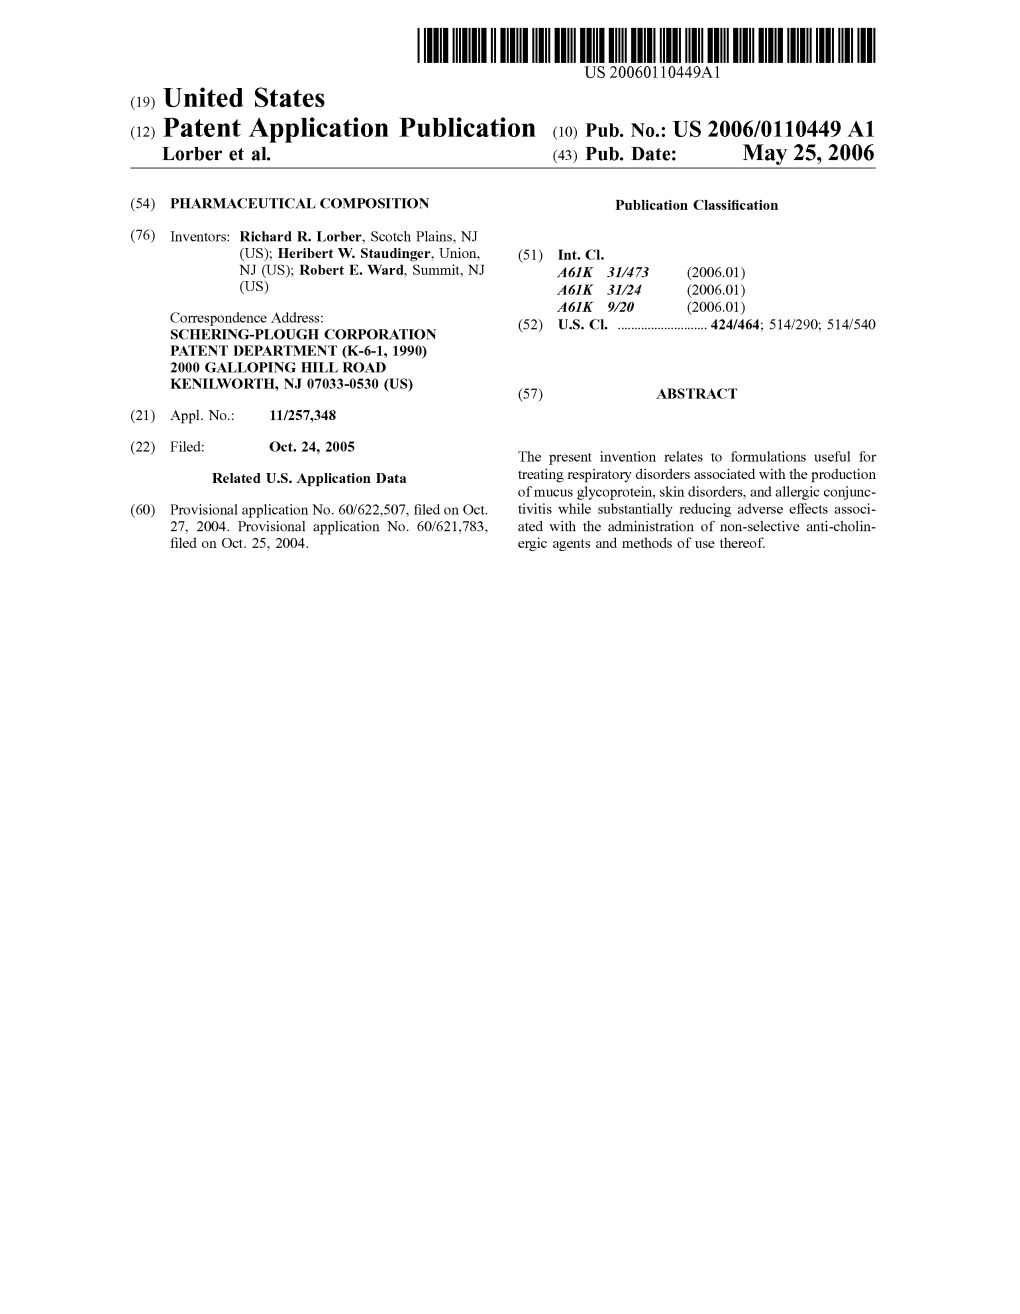 (12) Patent Application Publication (10) Pub. No.: US 2006/0110449 A1 Lorber Et Al